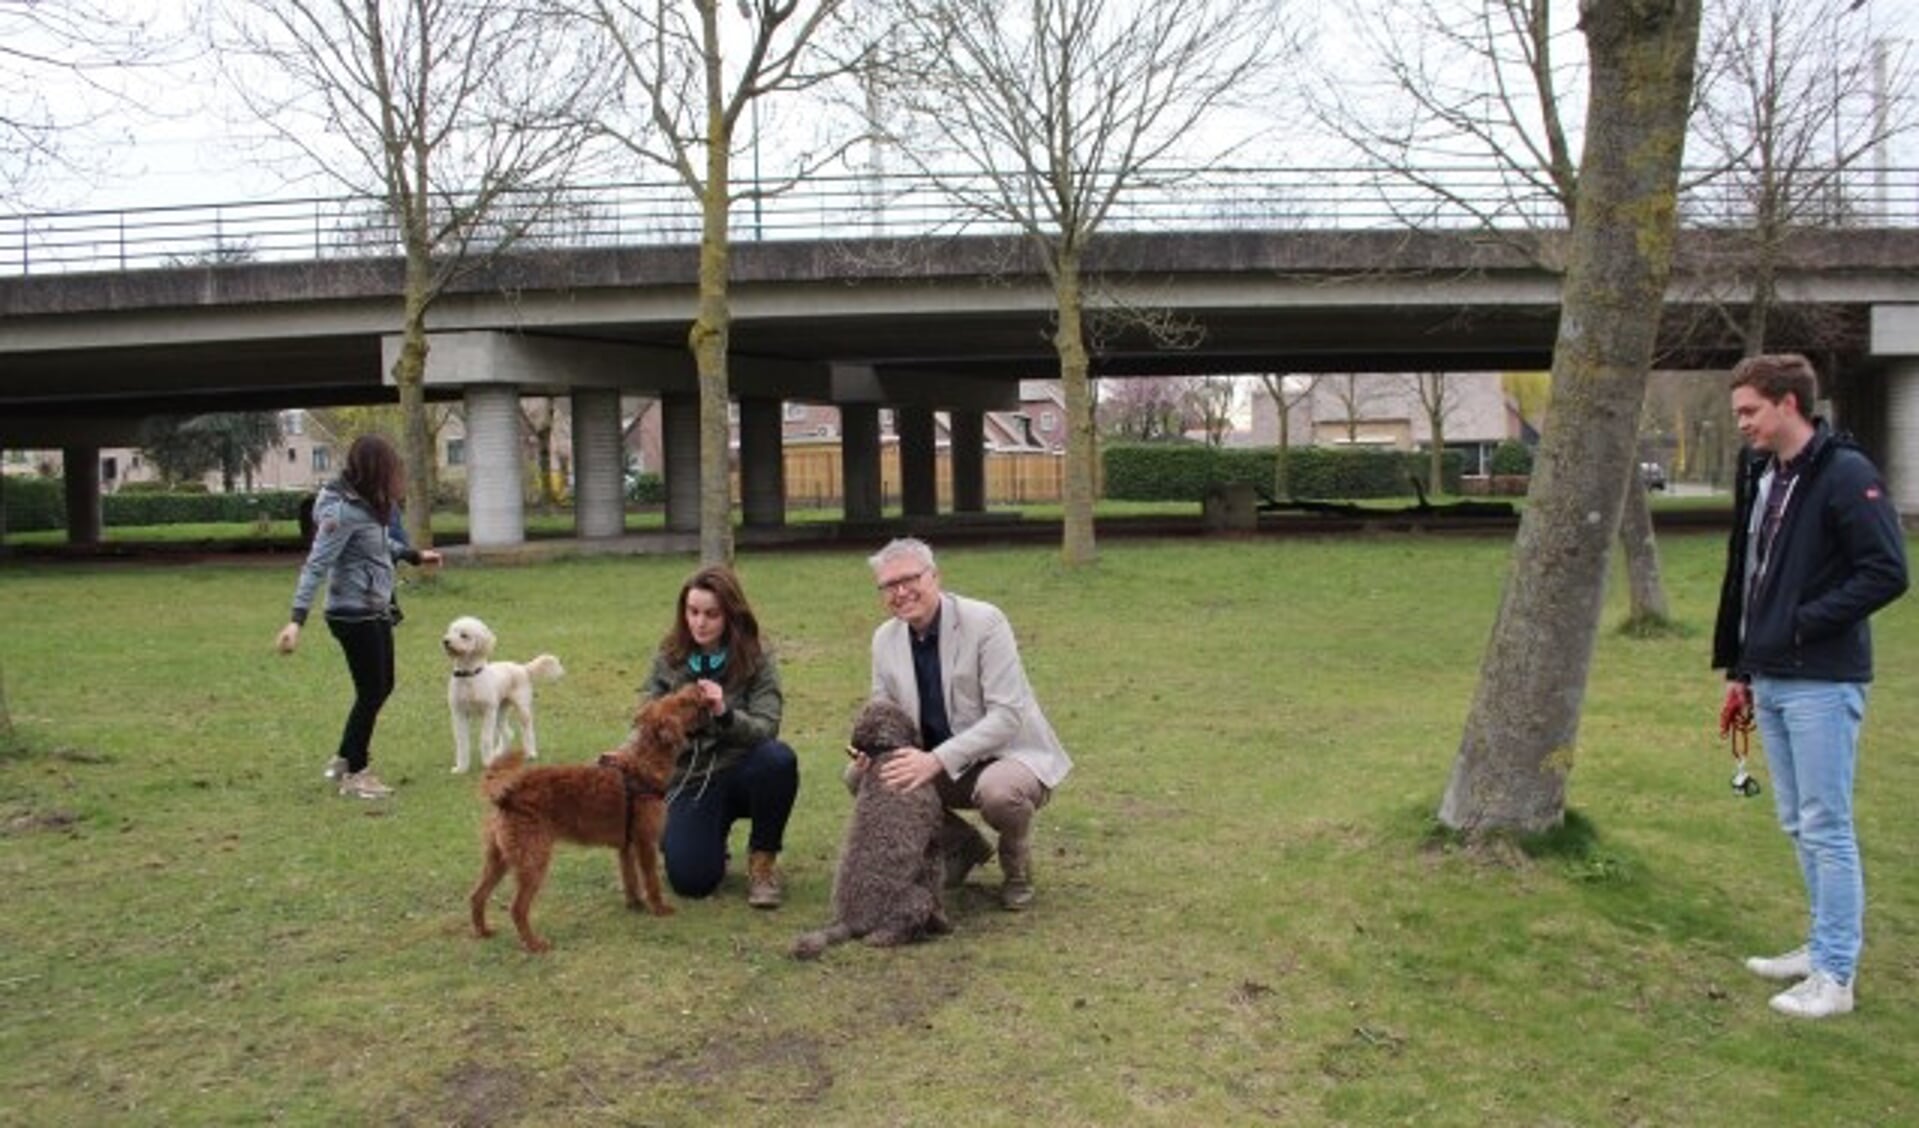 Hondentrainer Joëlla Rappard en wethouder Bekker - met zijn eigen hond - testten vorige week een hondenspeelveld. (Foto: Lysette Verwegen)